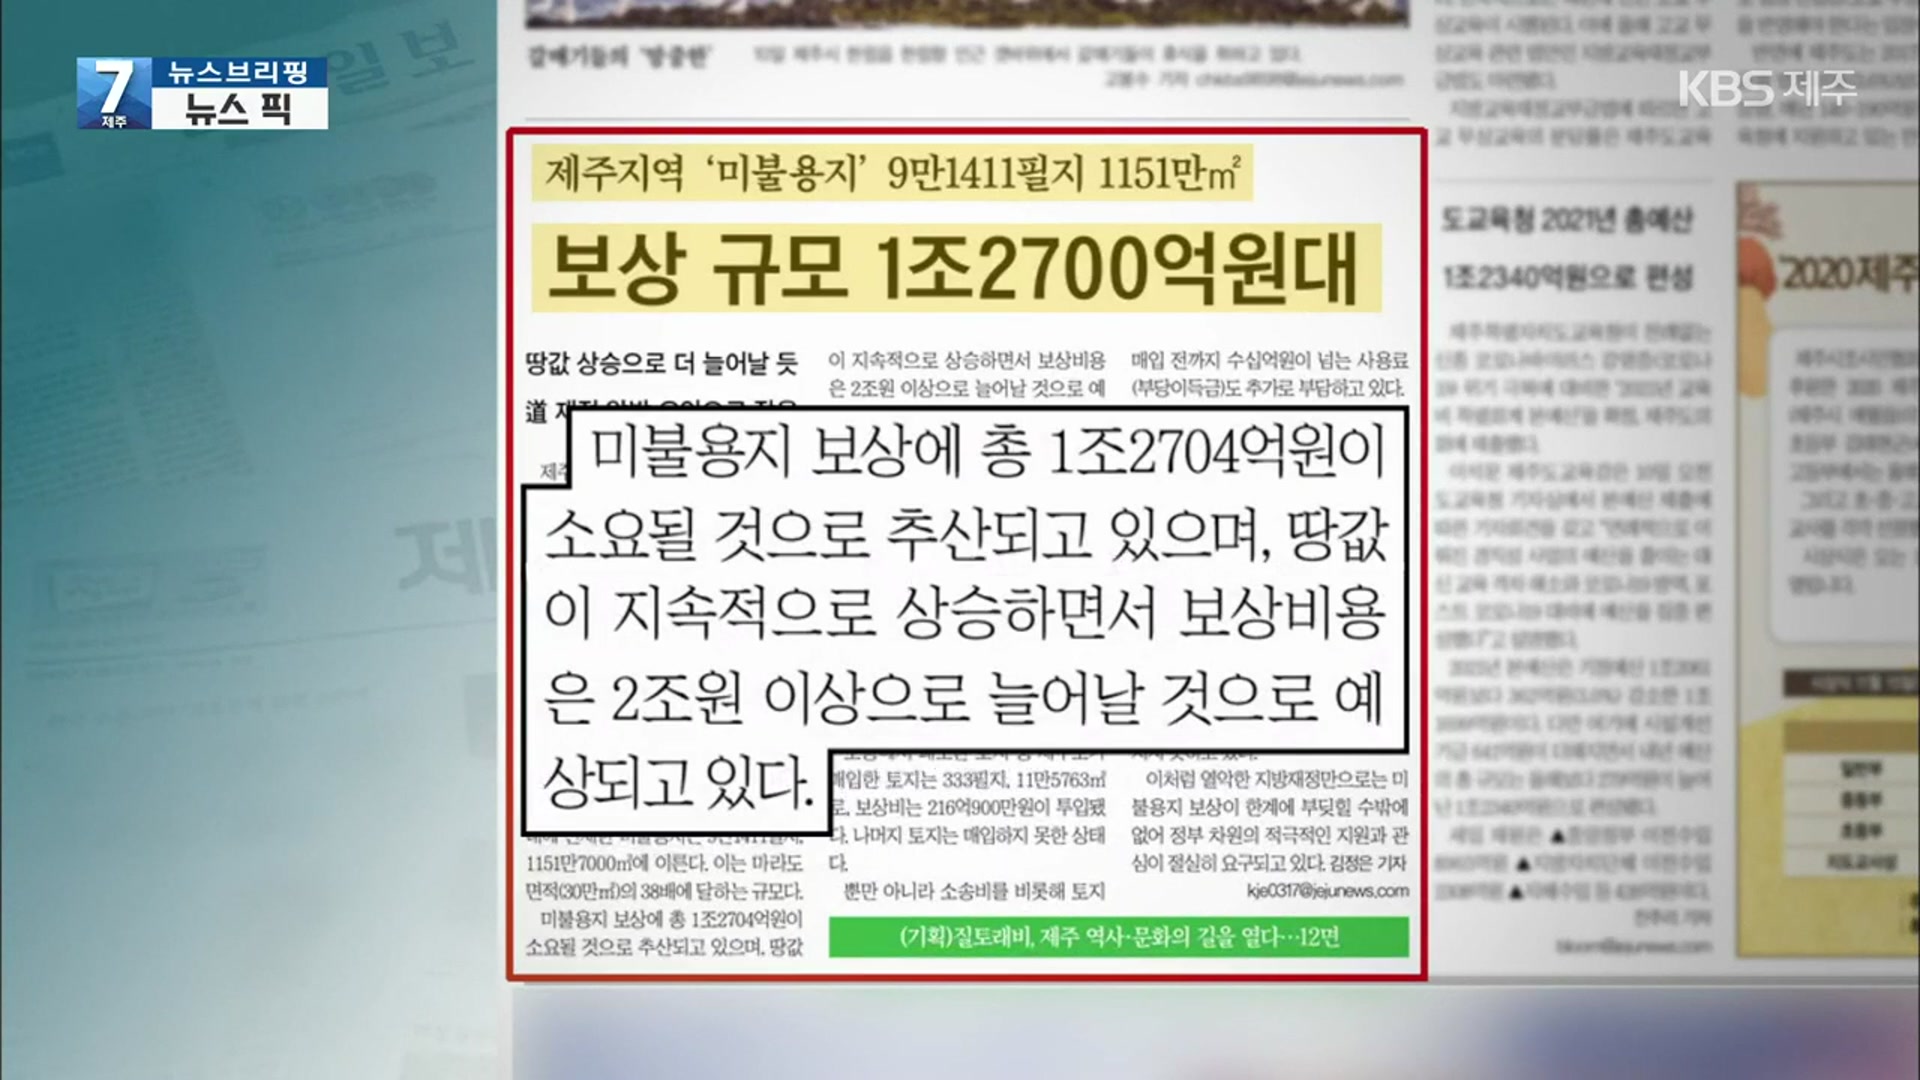 [뉴스브리핑] “보상 규모 1조 2,700억 원대” 외